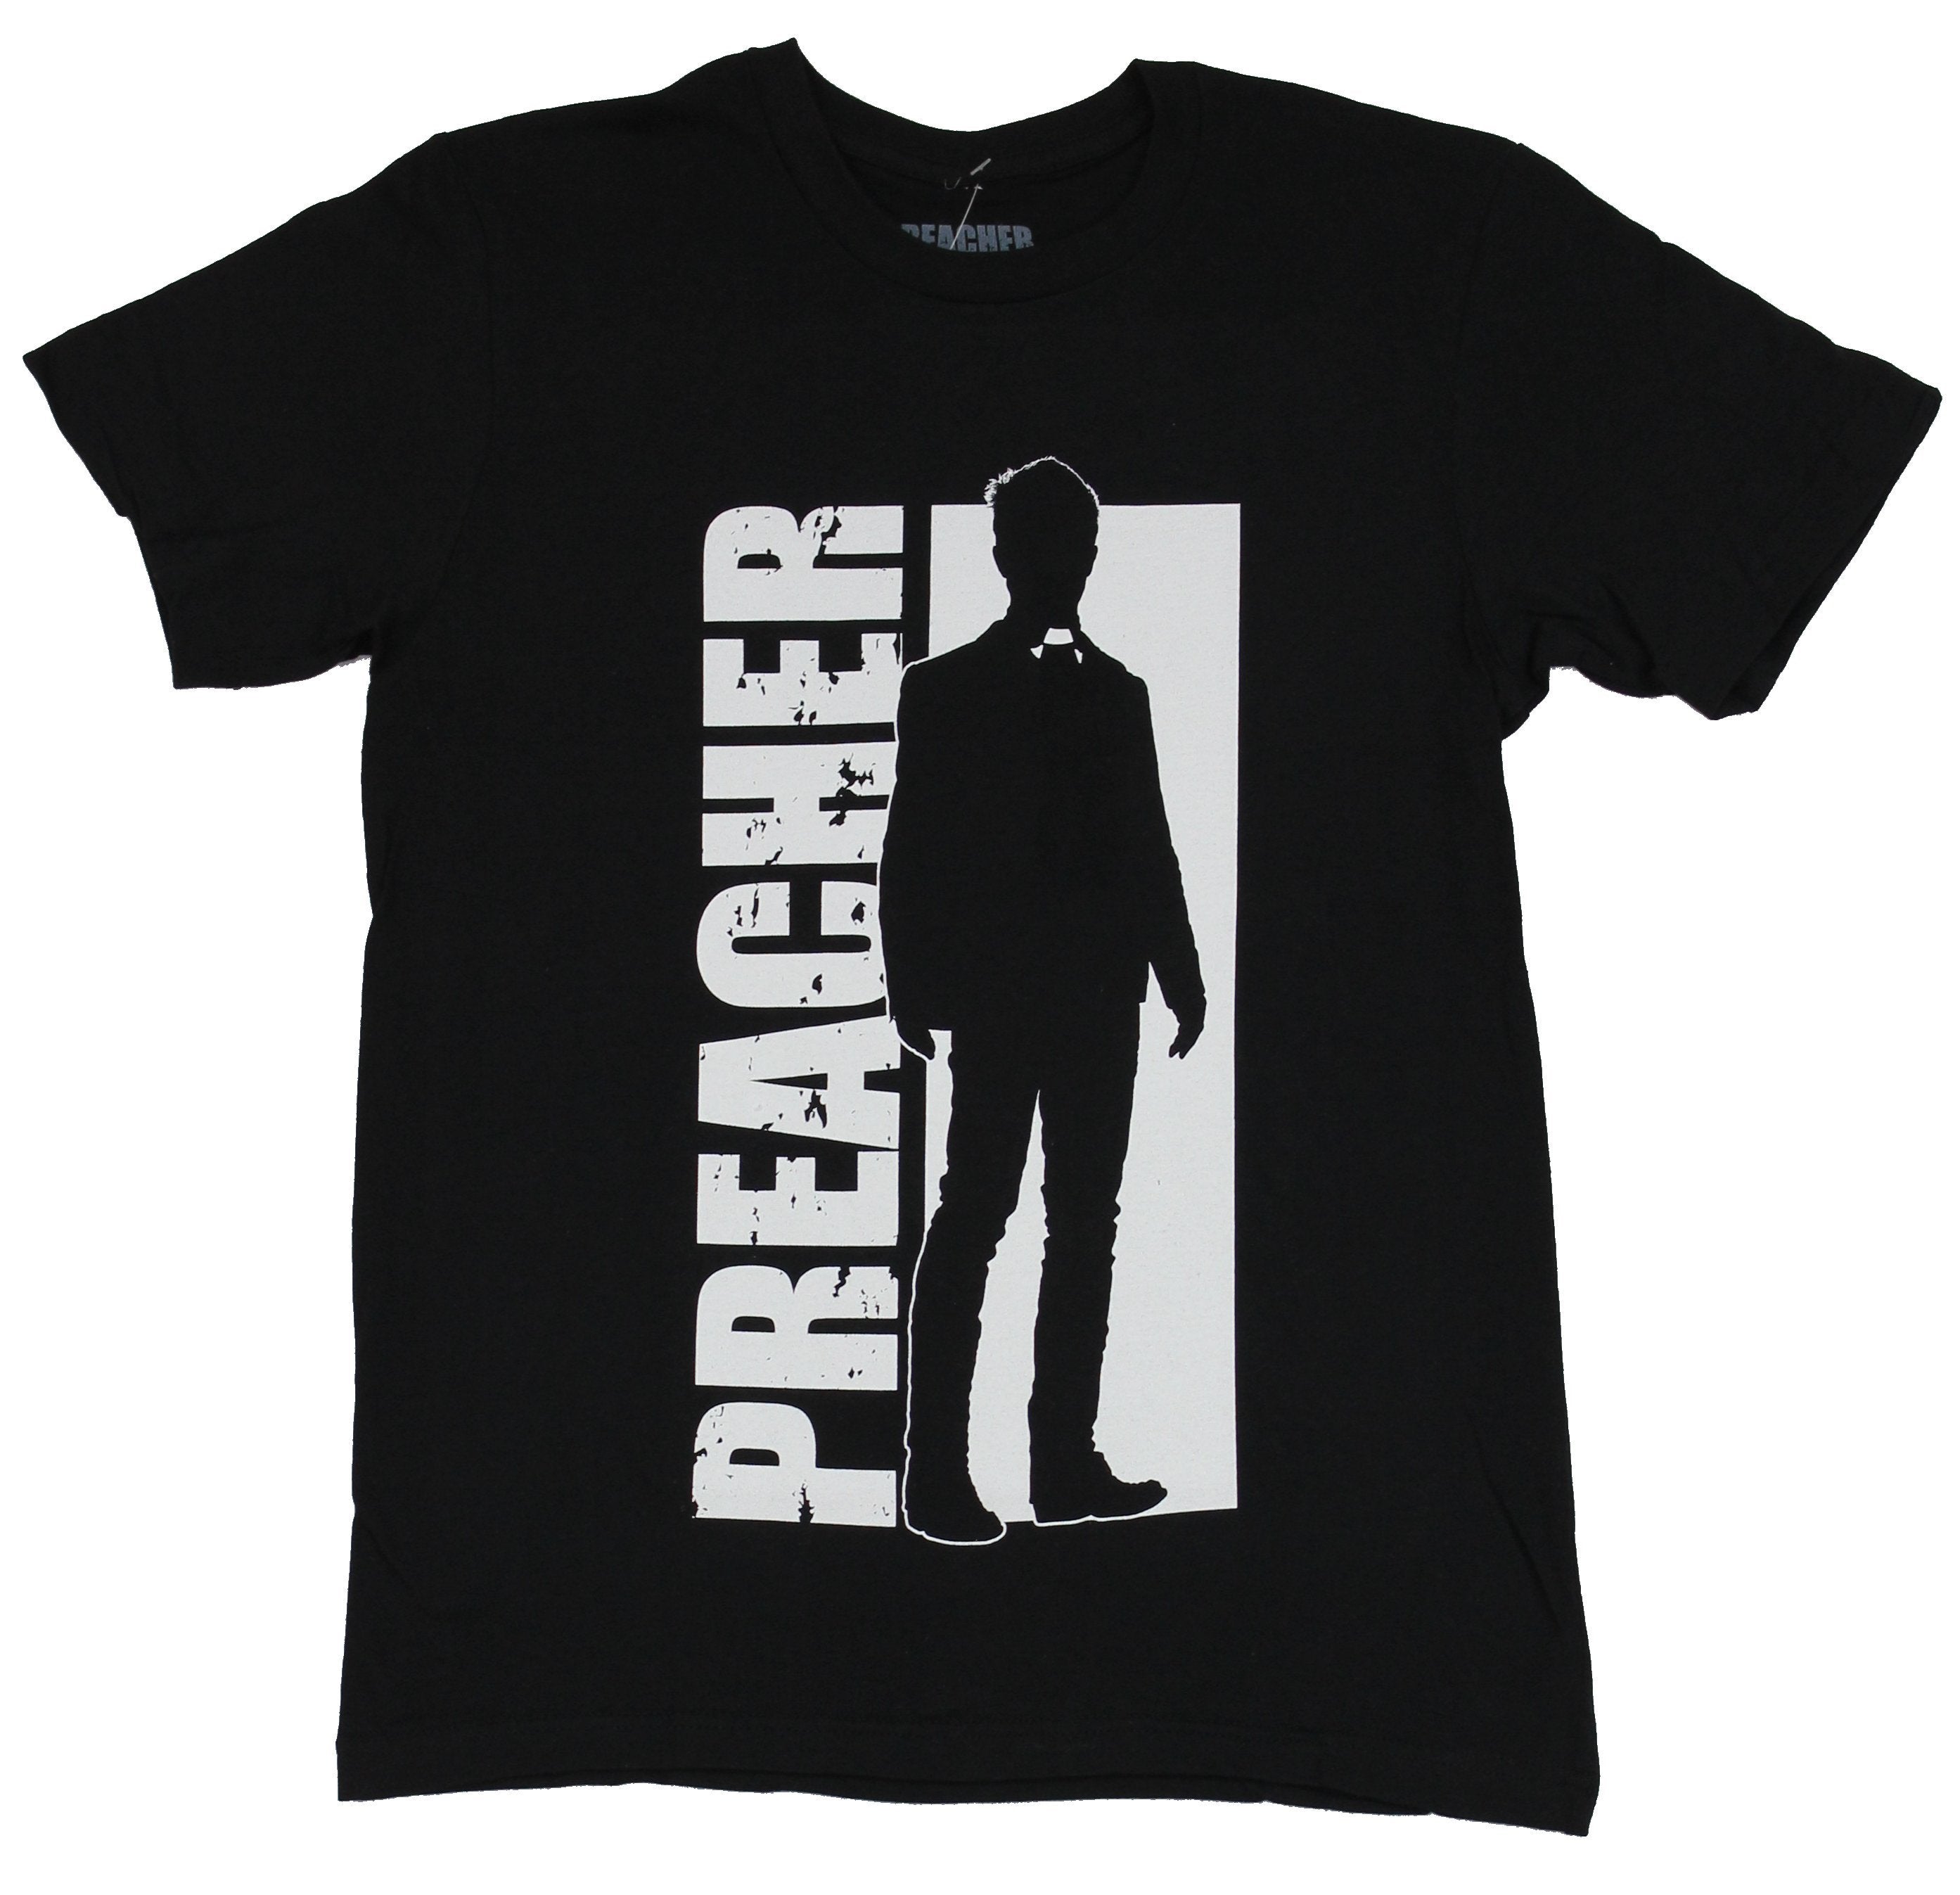 Preacher AMC Mens T-Shirt - Silhouette of Preacher Against Name